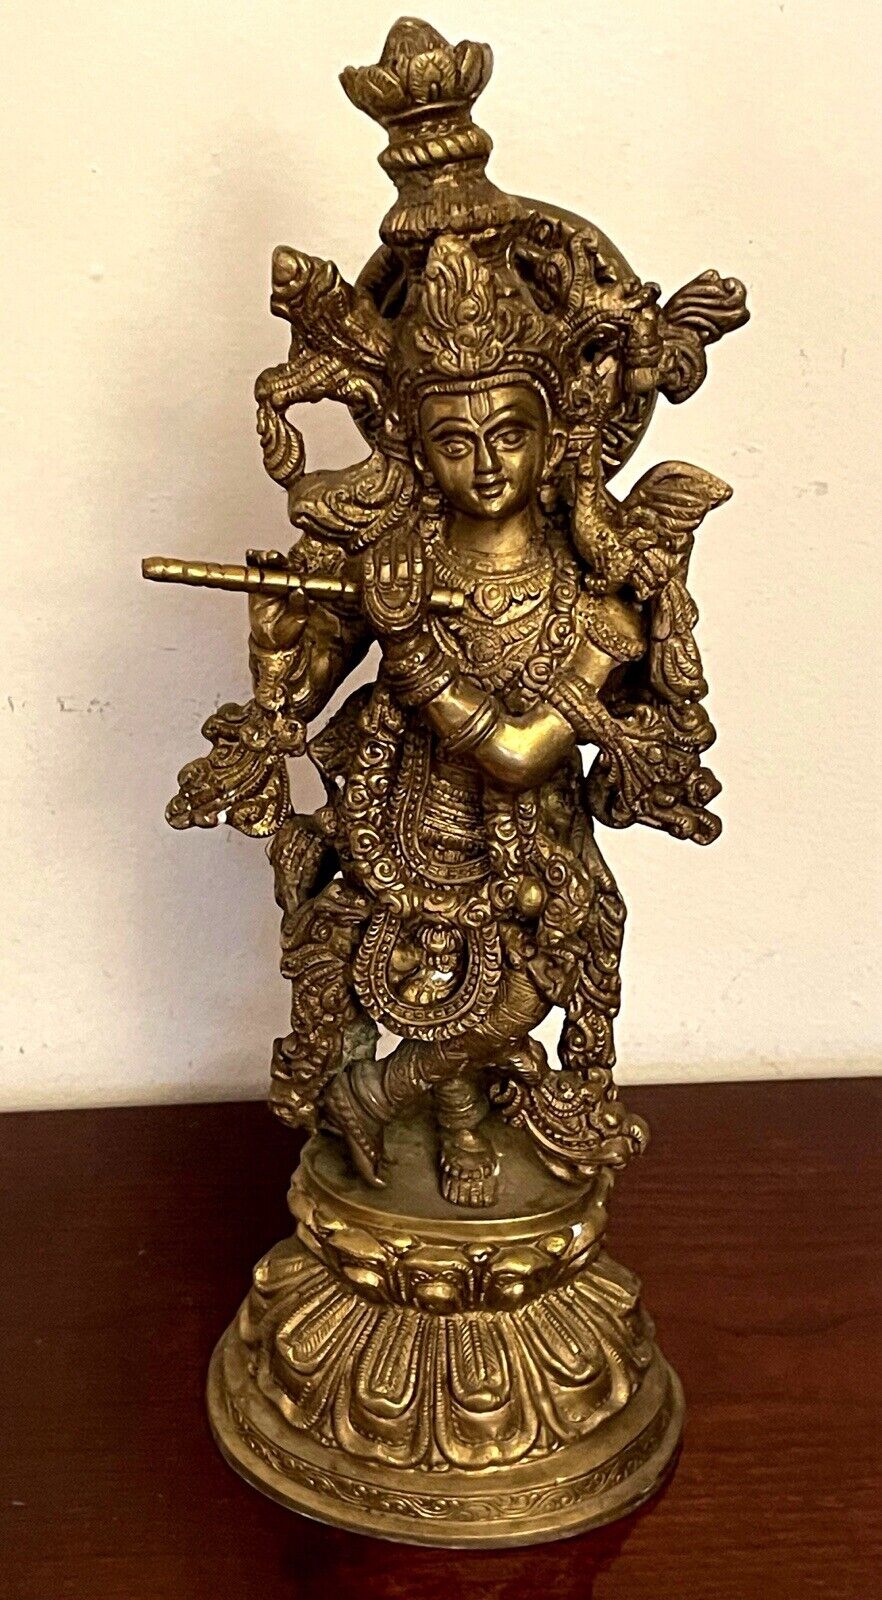 Hindu Idol Lord Krishna Flute Player Large Heavy 15 x 6 Inch 10.1Lb Brass Statue